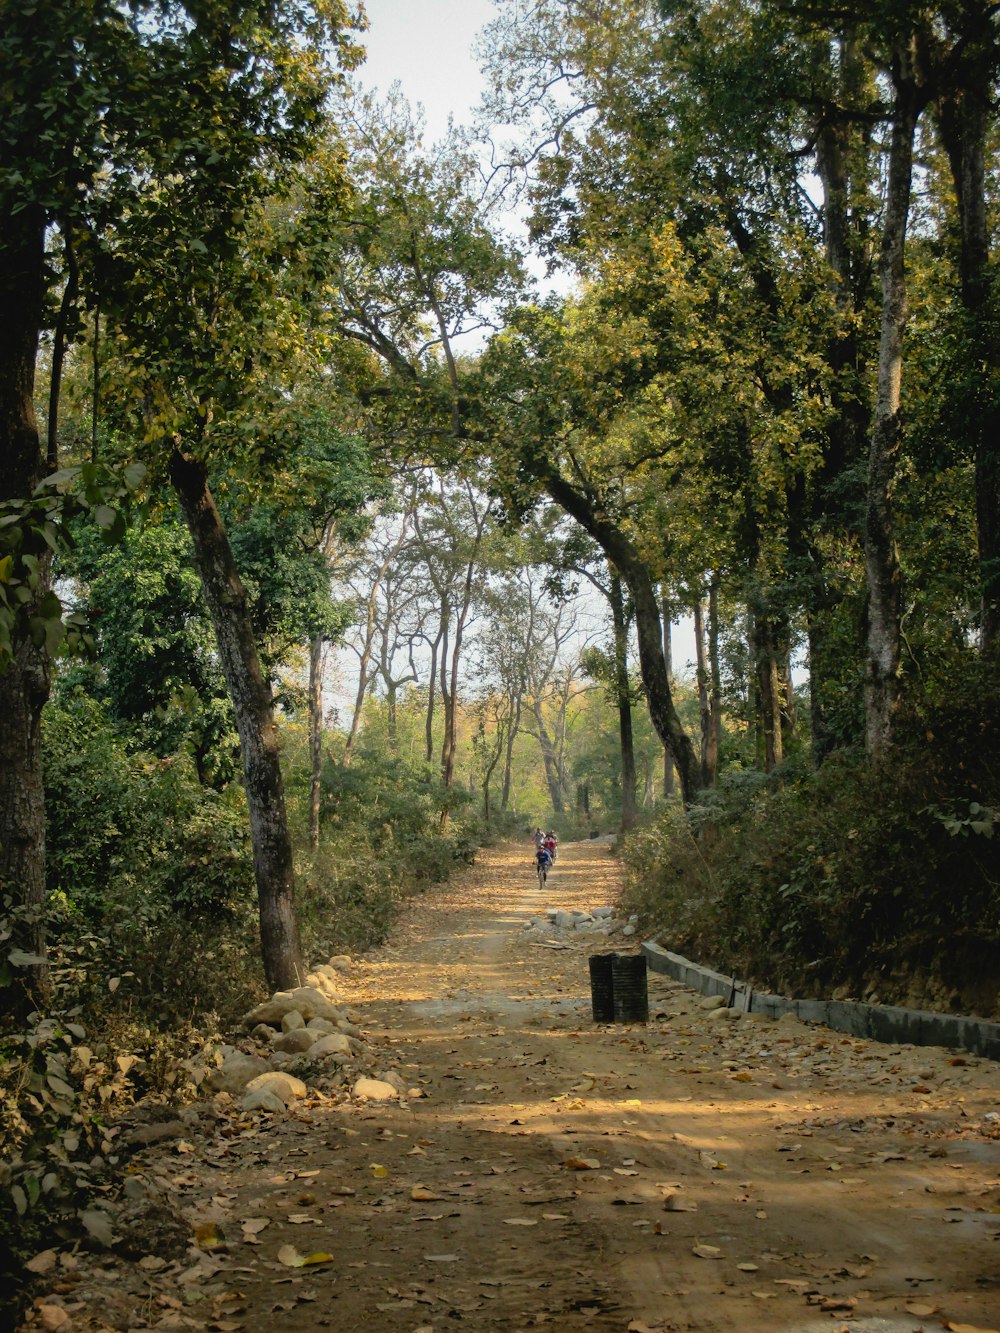 uma pessoa caminhando por uma estrada de terra cercada por árvores